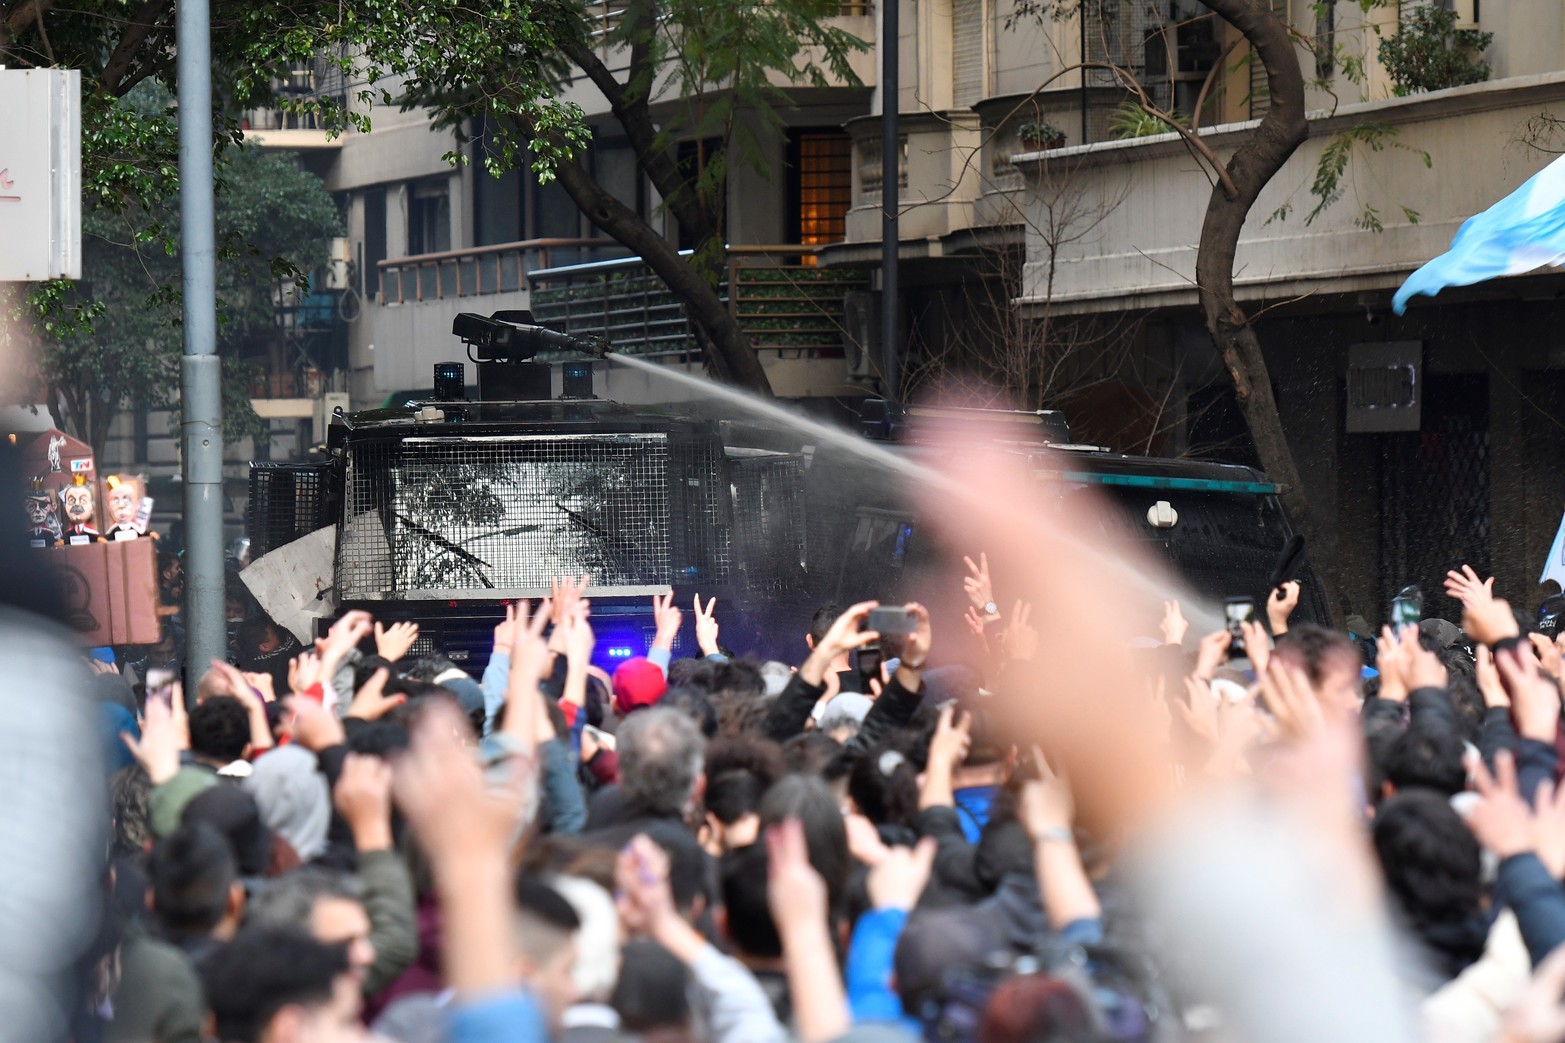 La intervención policial para intentar controlar el avance. Crédito: Eliana Obregón Telam